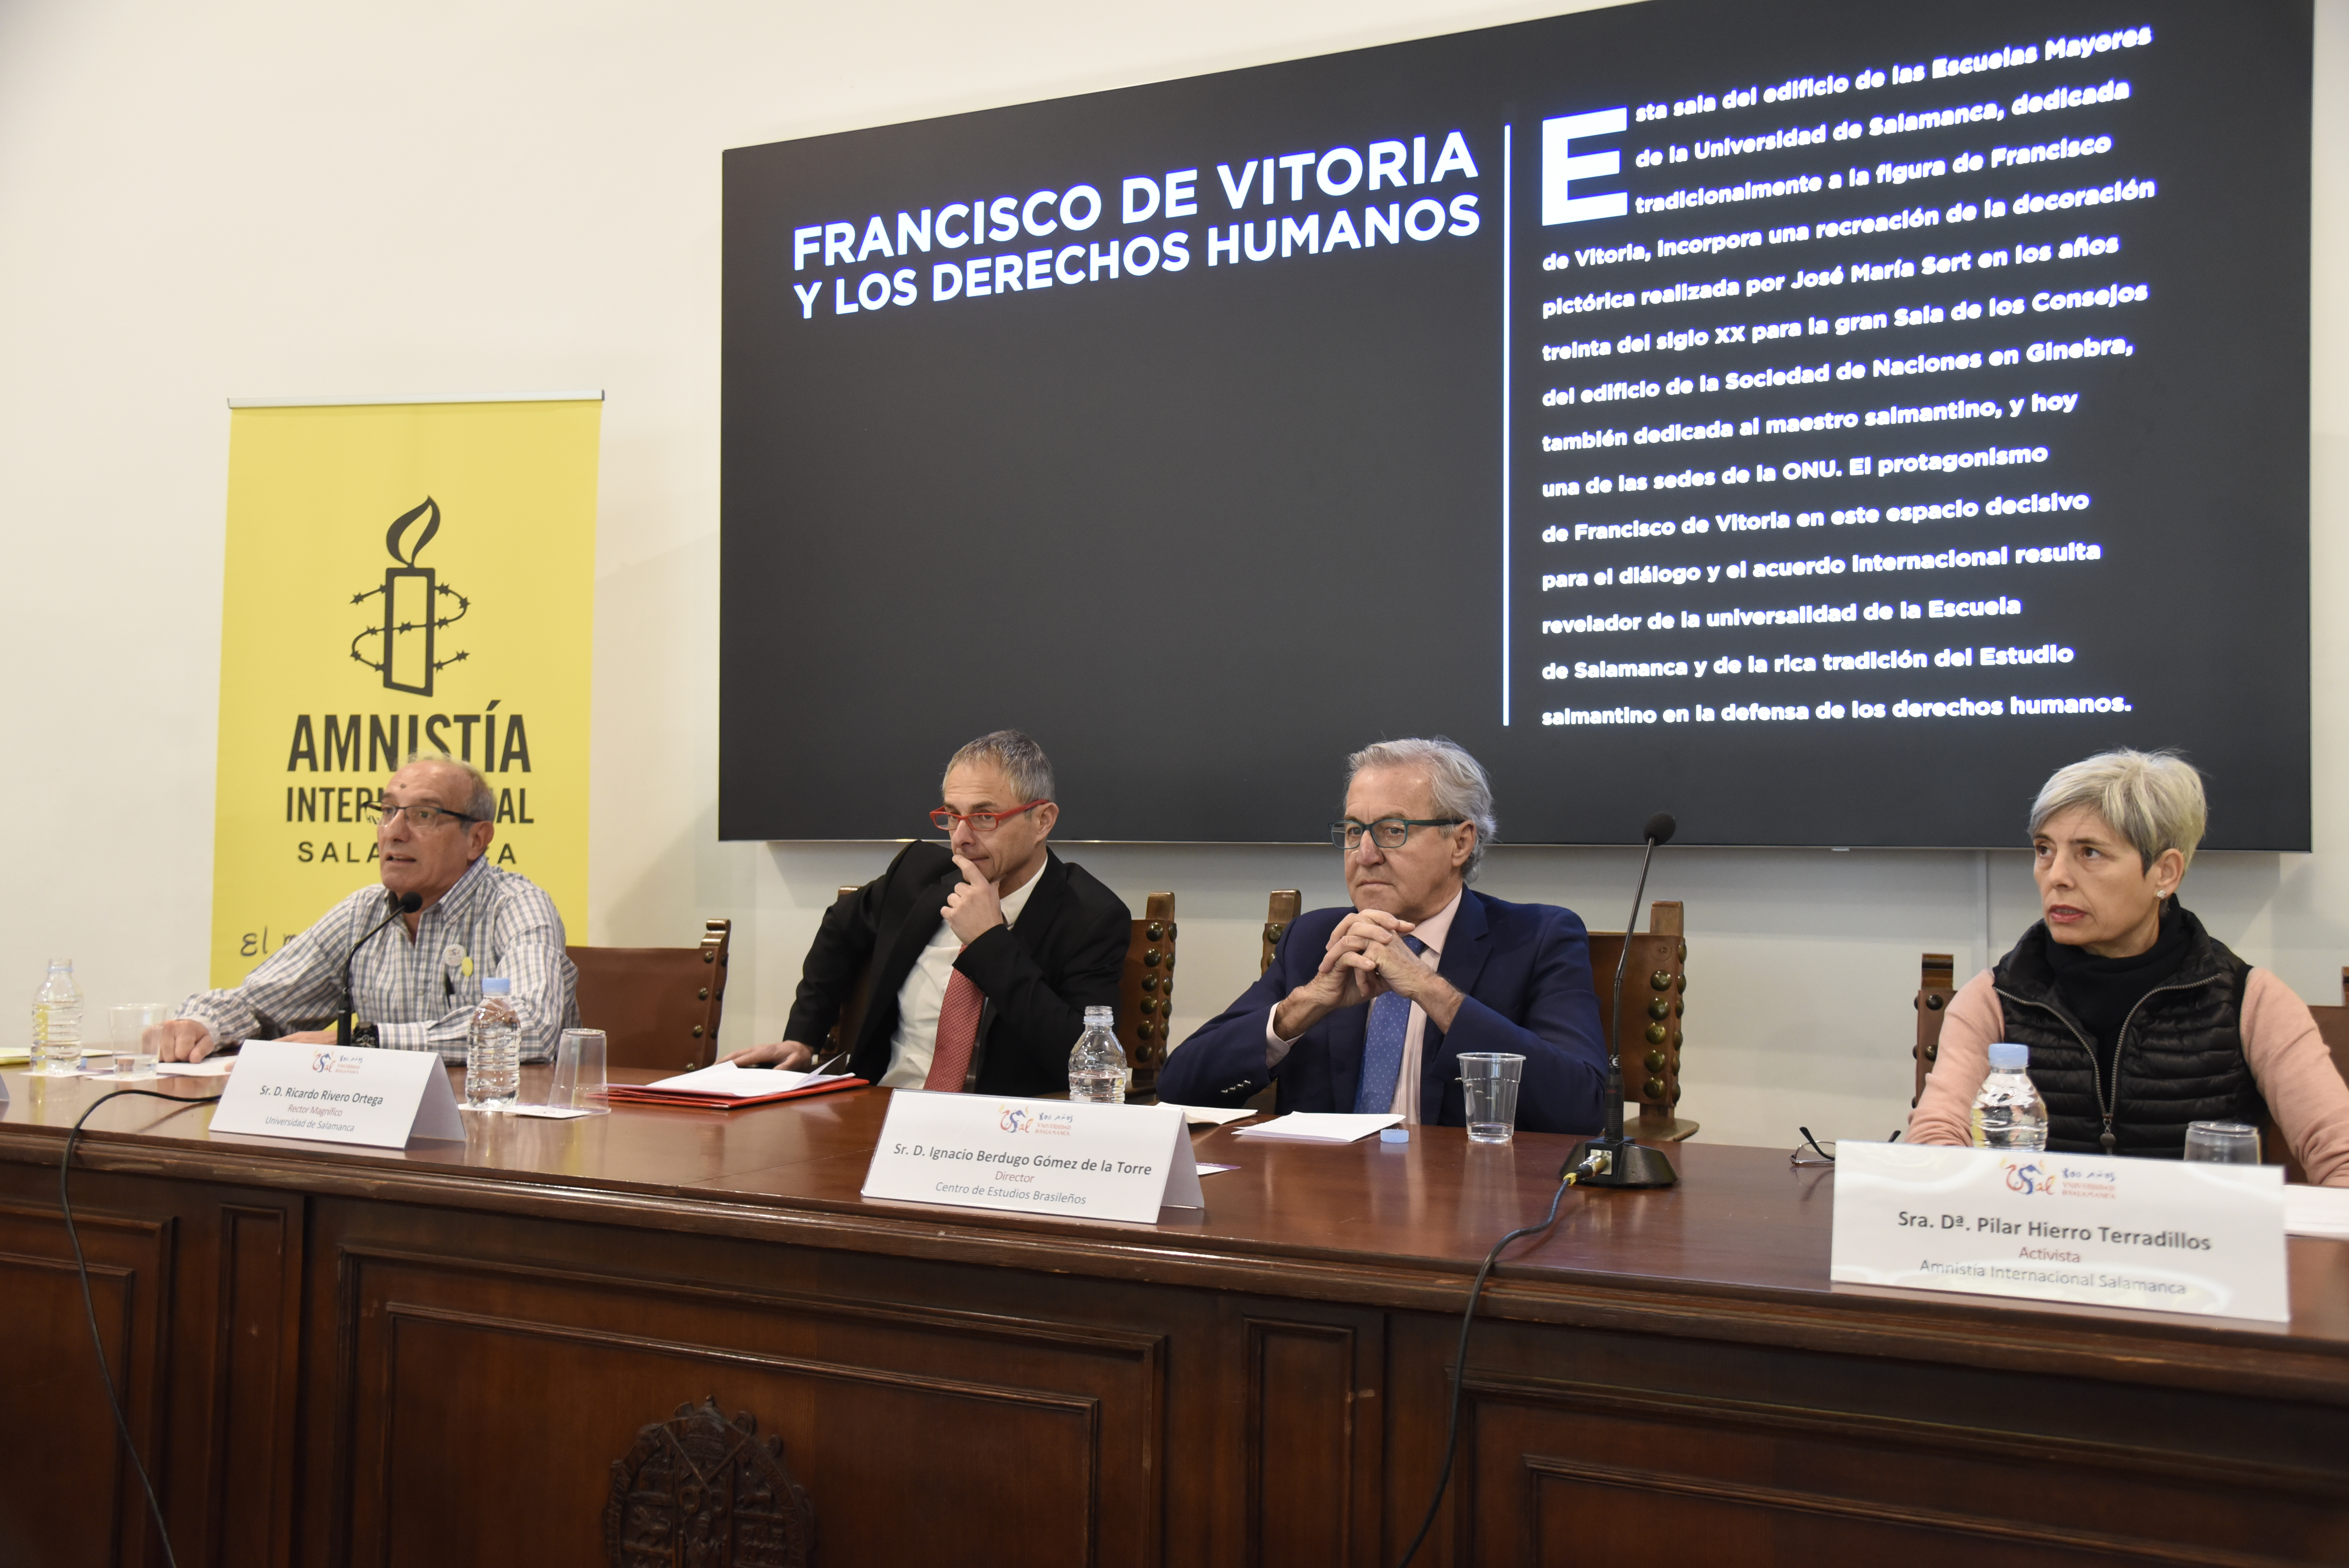 La Universidad de Salamanca acoge el acto conmemorativo por el 40º aniversario de Amnistía Internacional en España